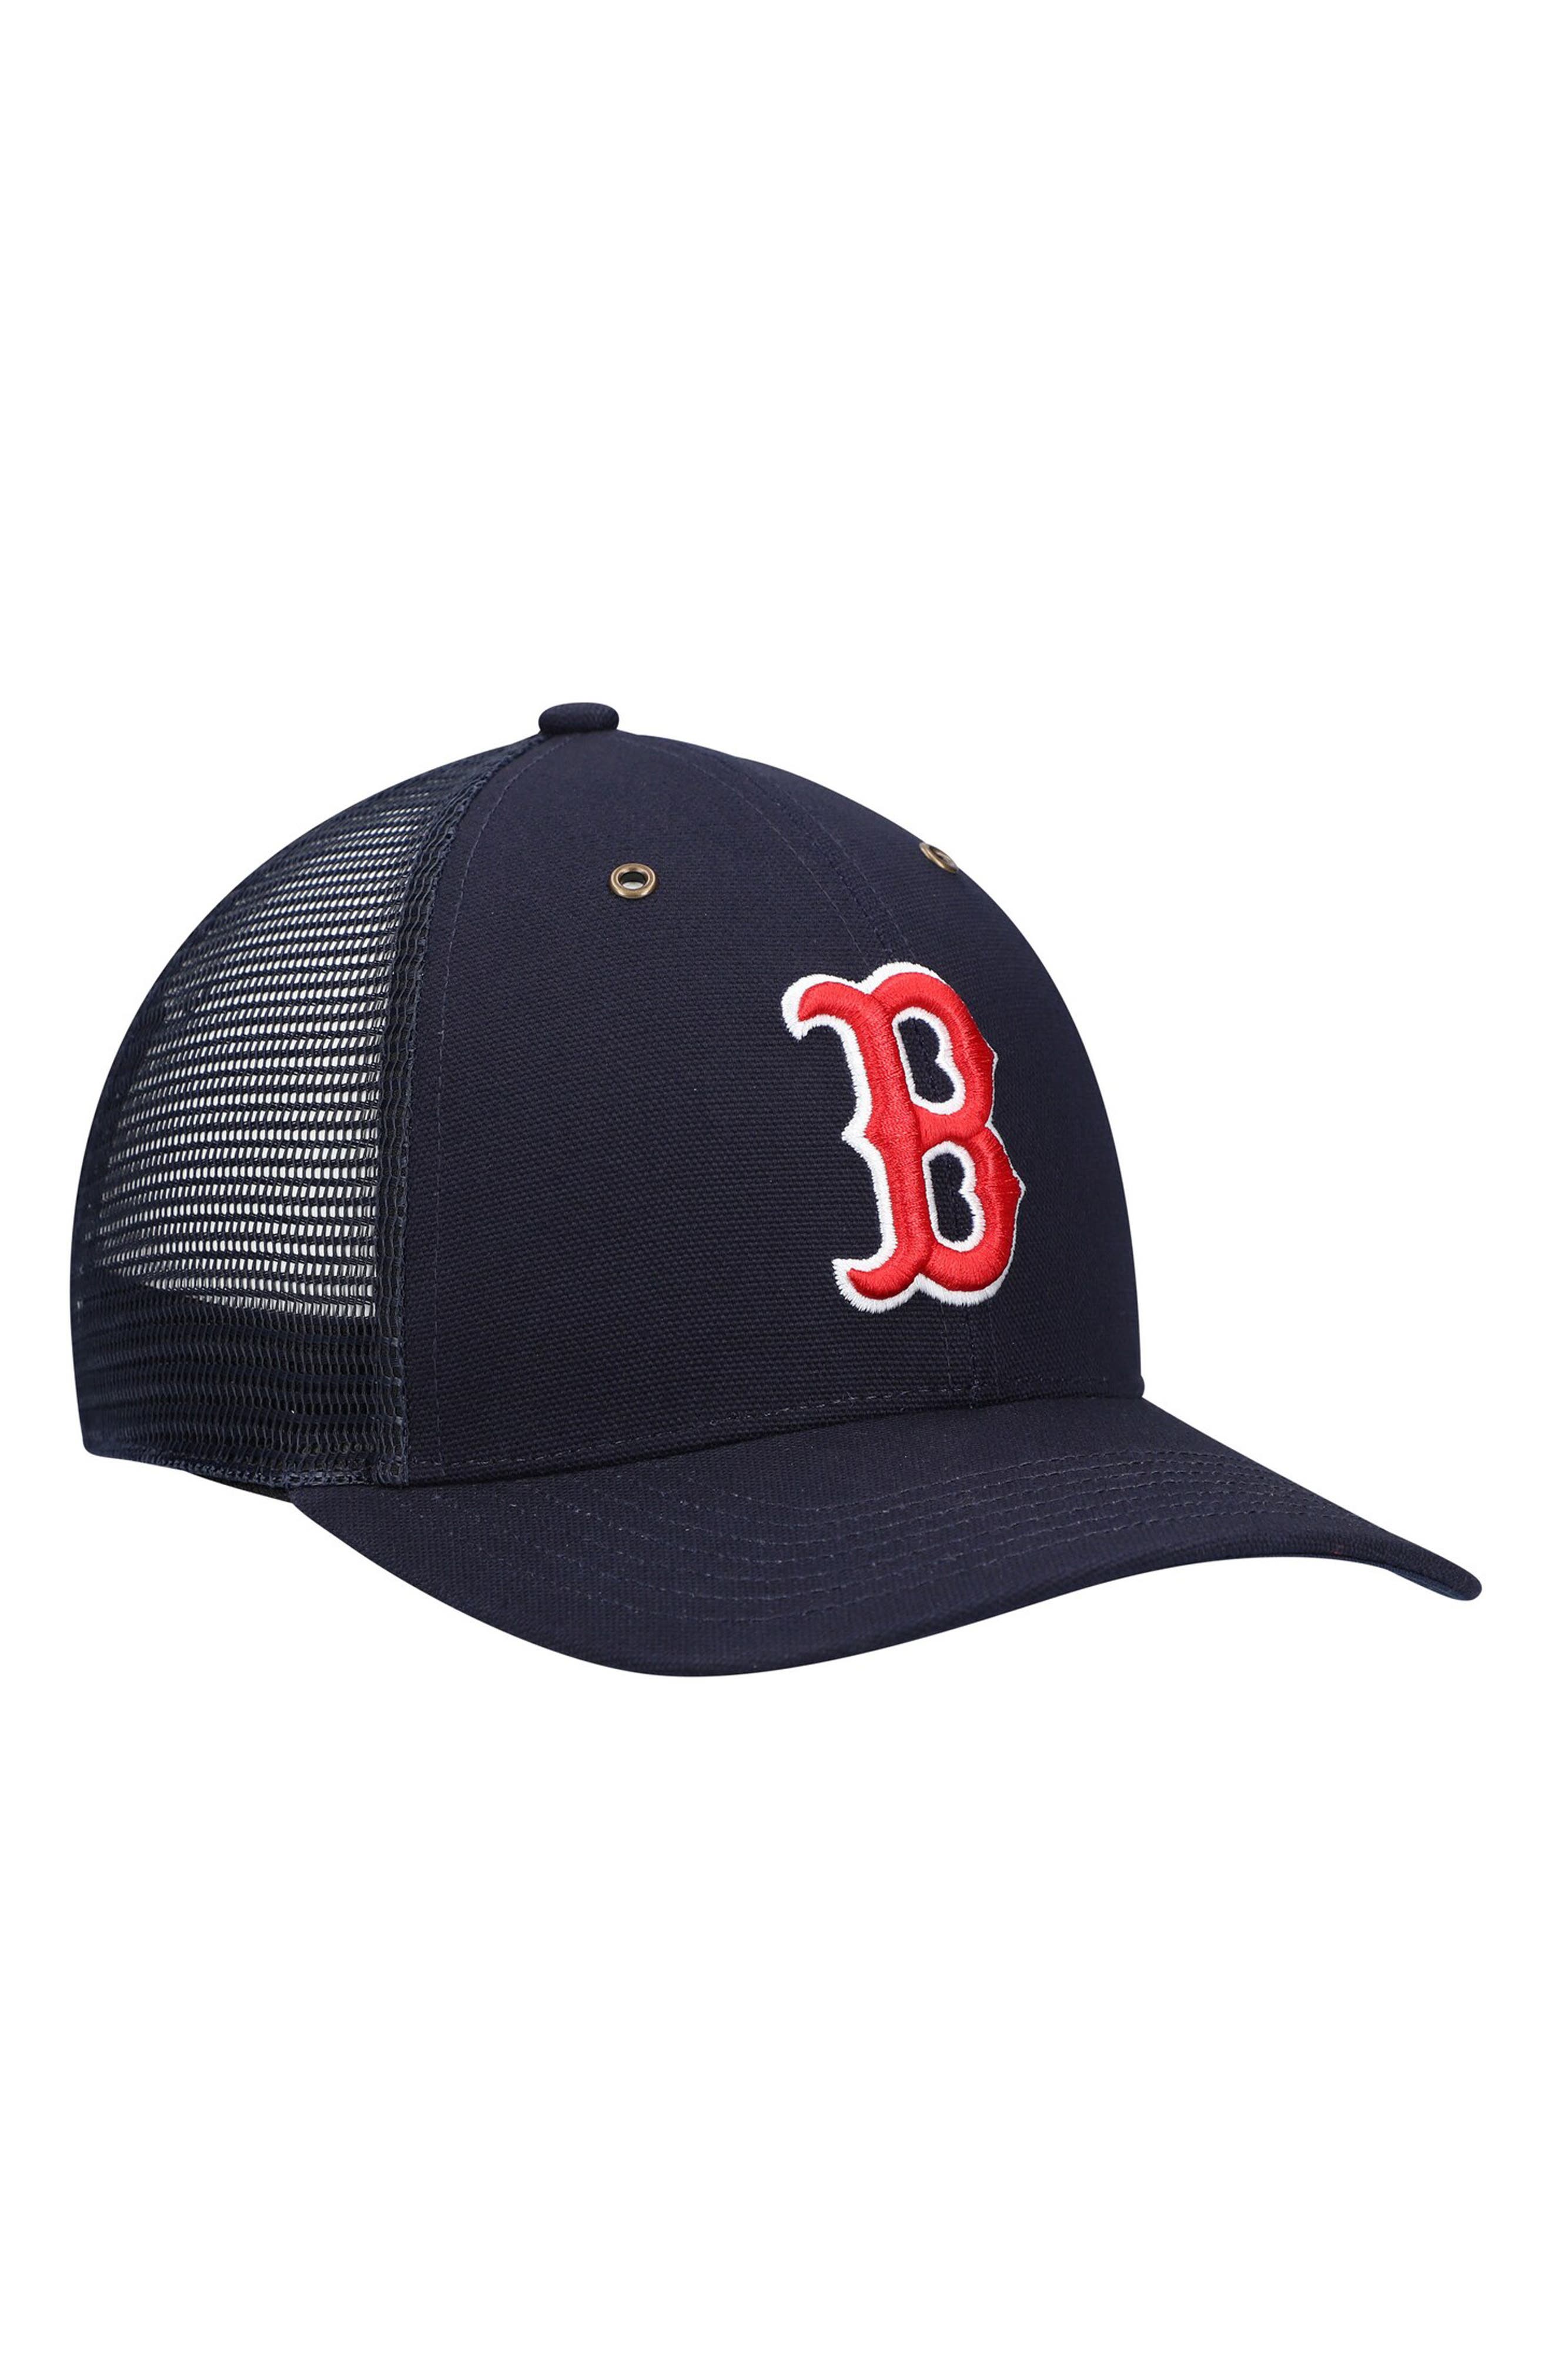 CARHARTT X 47 Men's Carhartt x '47 Navy Boston Red Sox MVP Trucker Snapback Hat at Nordstrom